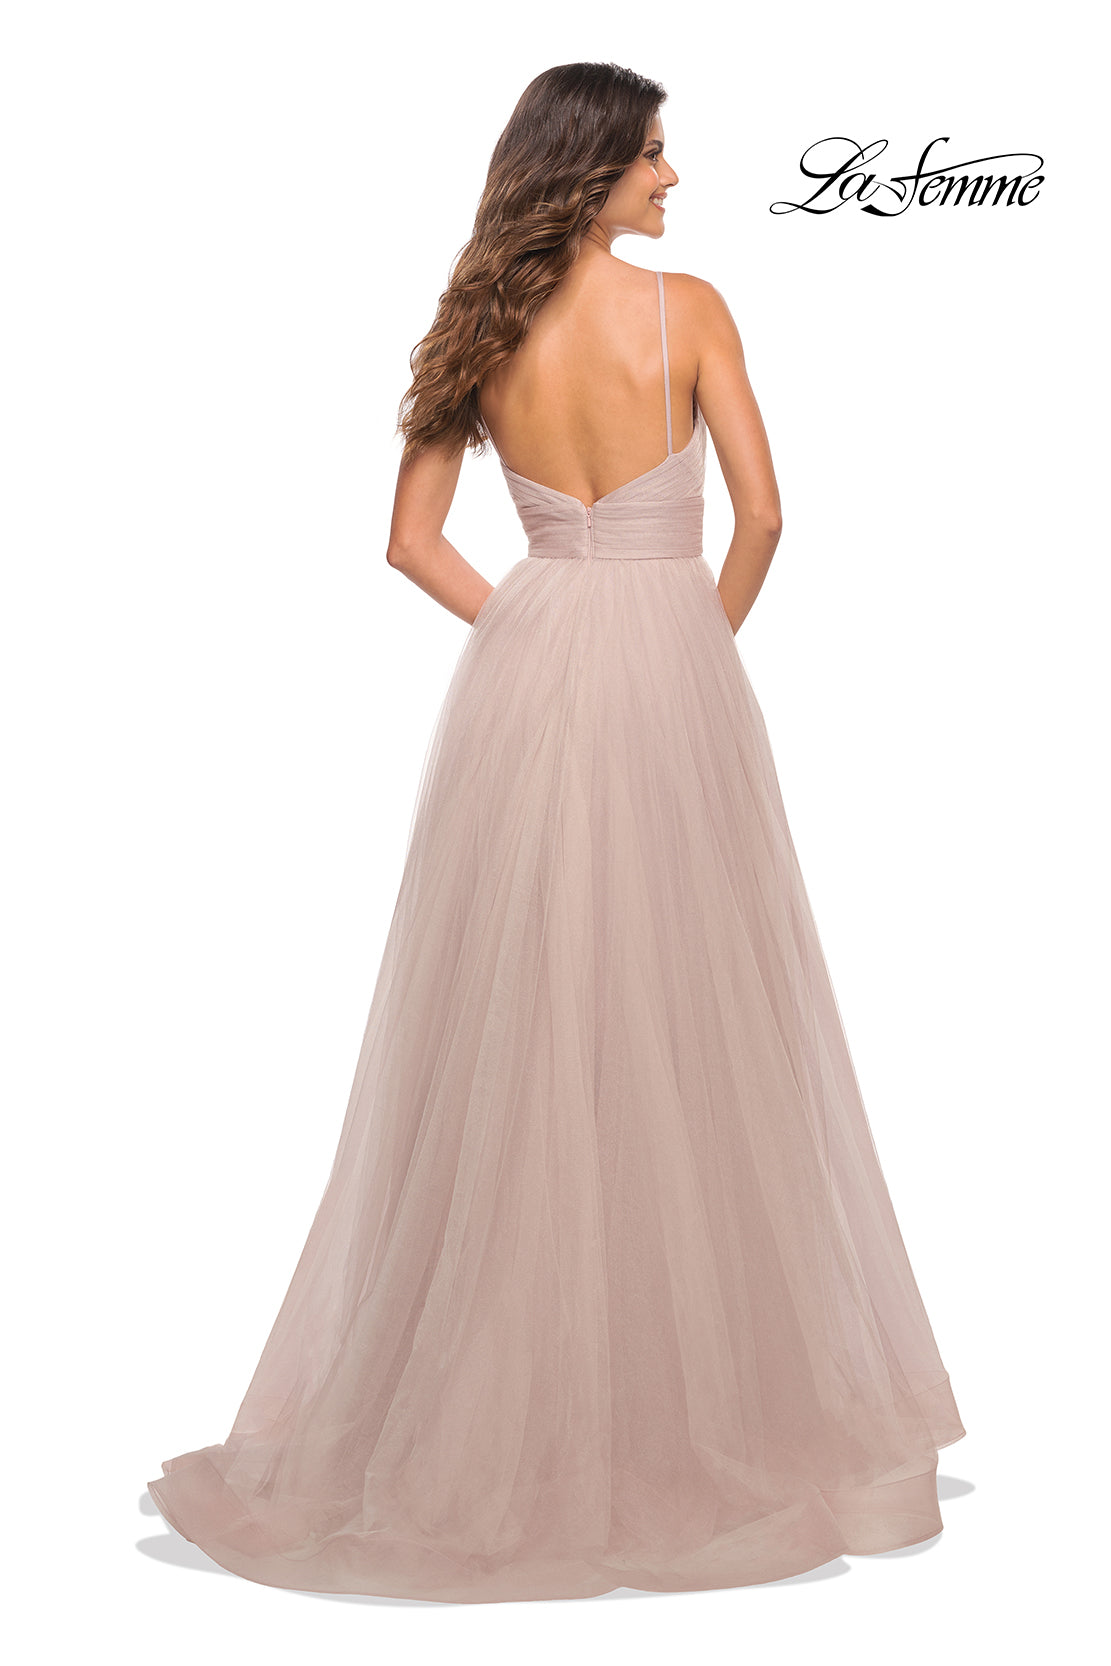  La Femme V-Neck Long Tulle Prom Ball Gown